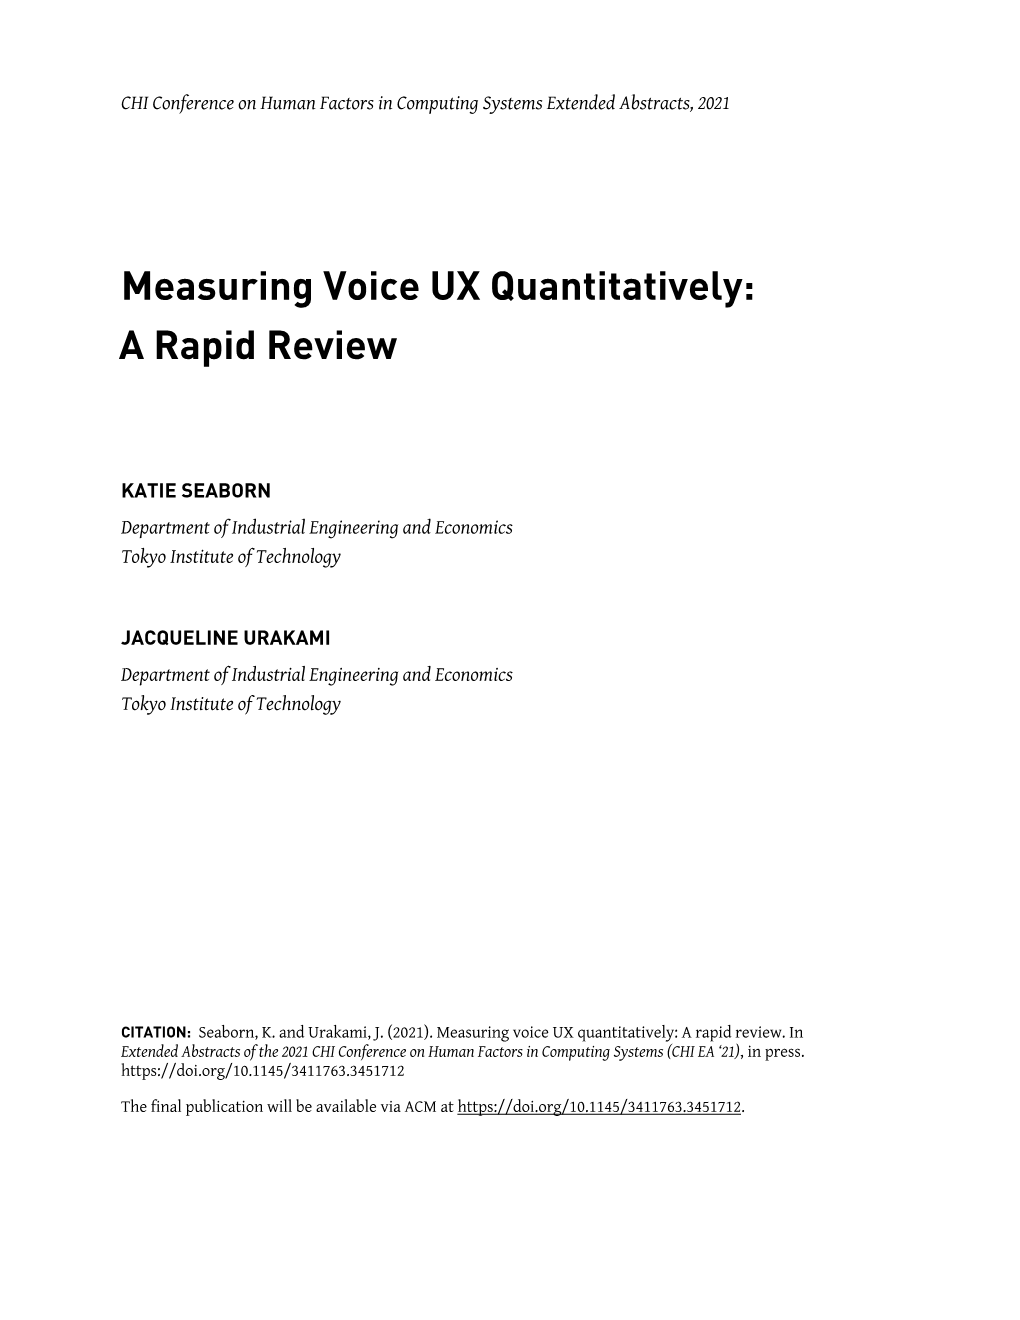 Measuring Voice UX Quantitatively: a Rapid Review